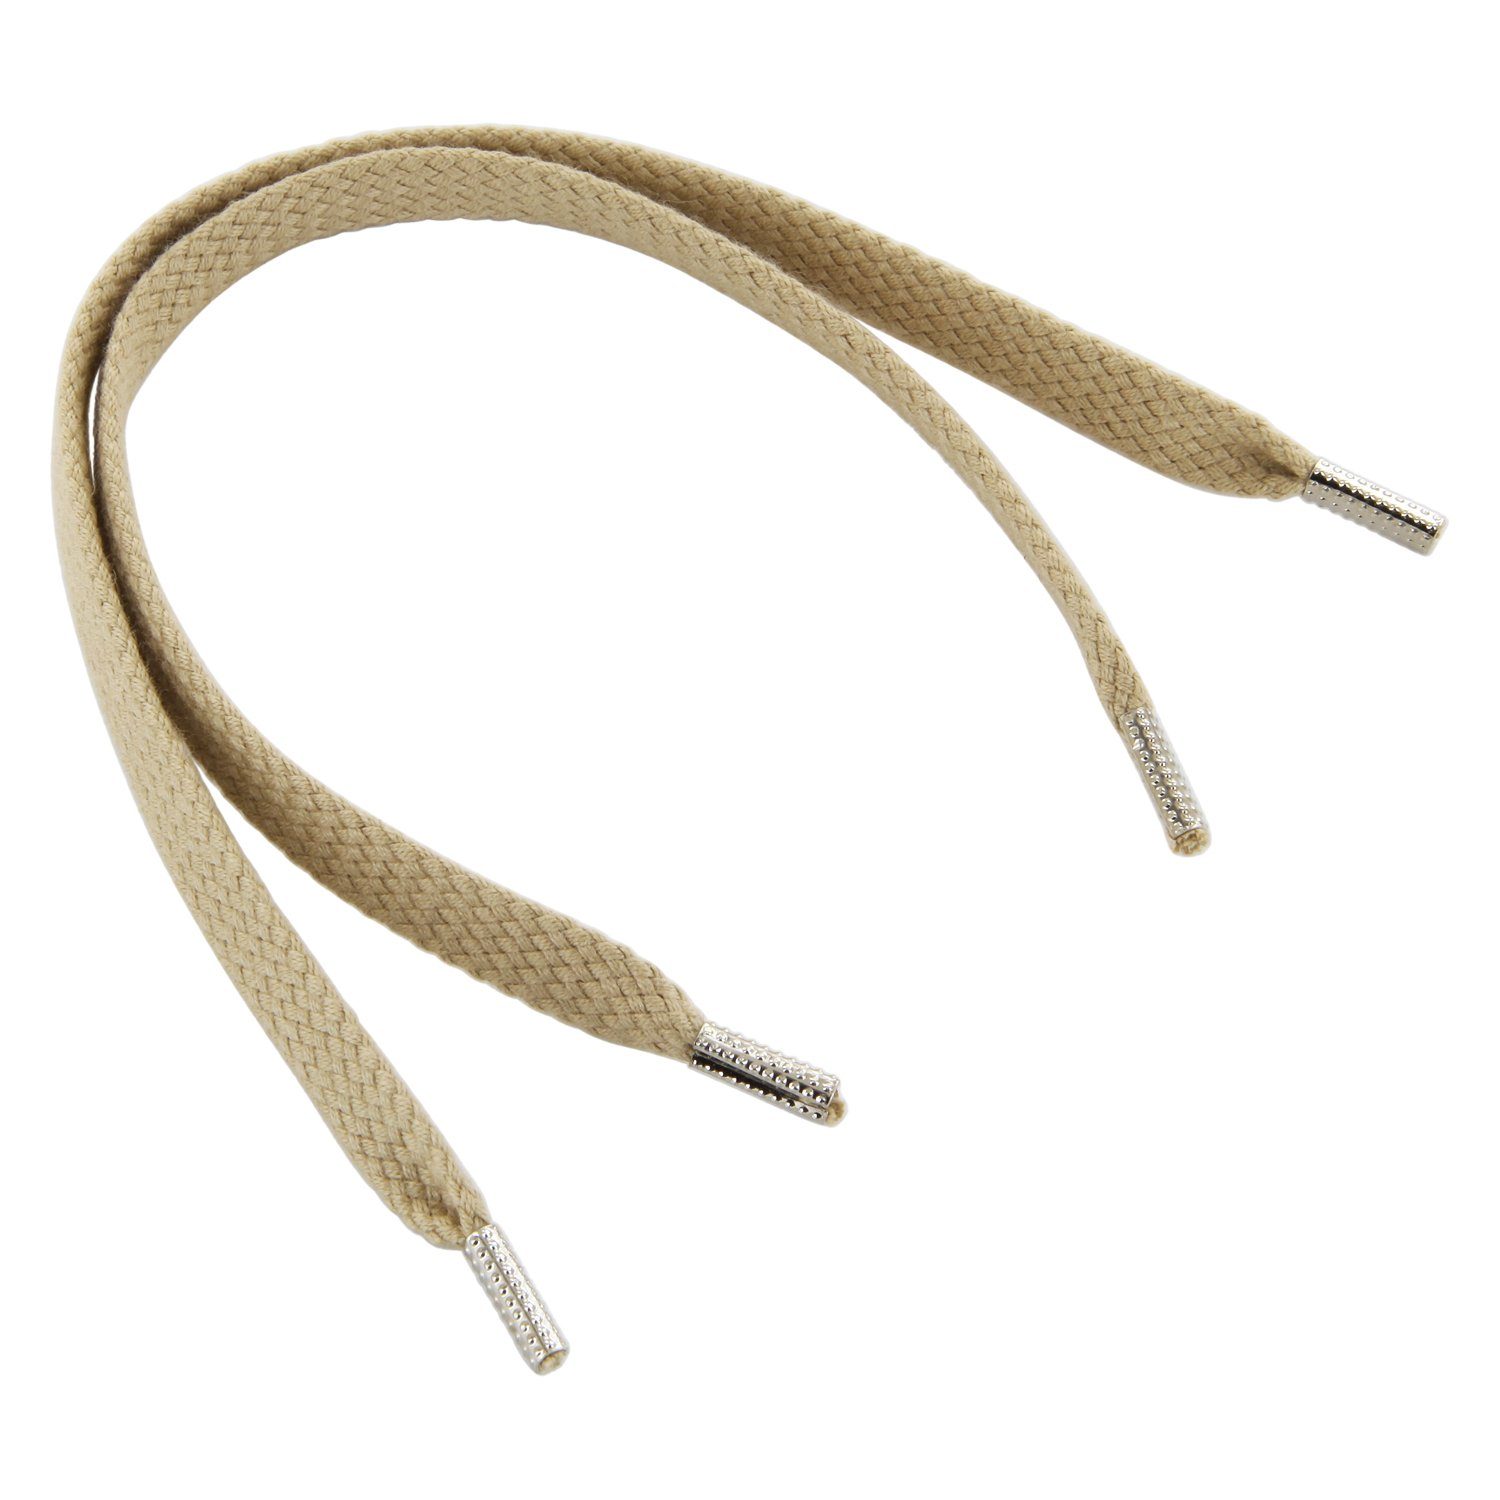 Rema Schnürsenkel Rema Schnürsenkel Creme - flach - ca. 6-7 mm breit für Sie nach Wunschlänge geschnitten und mit Metallenden versehen